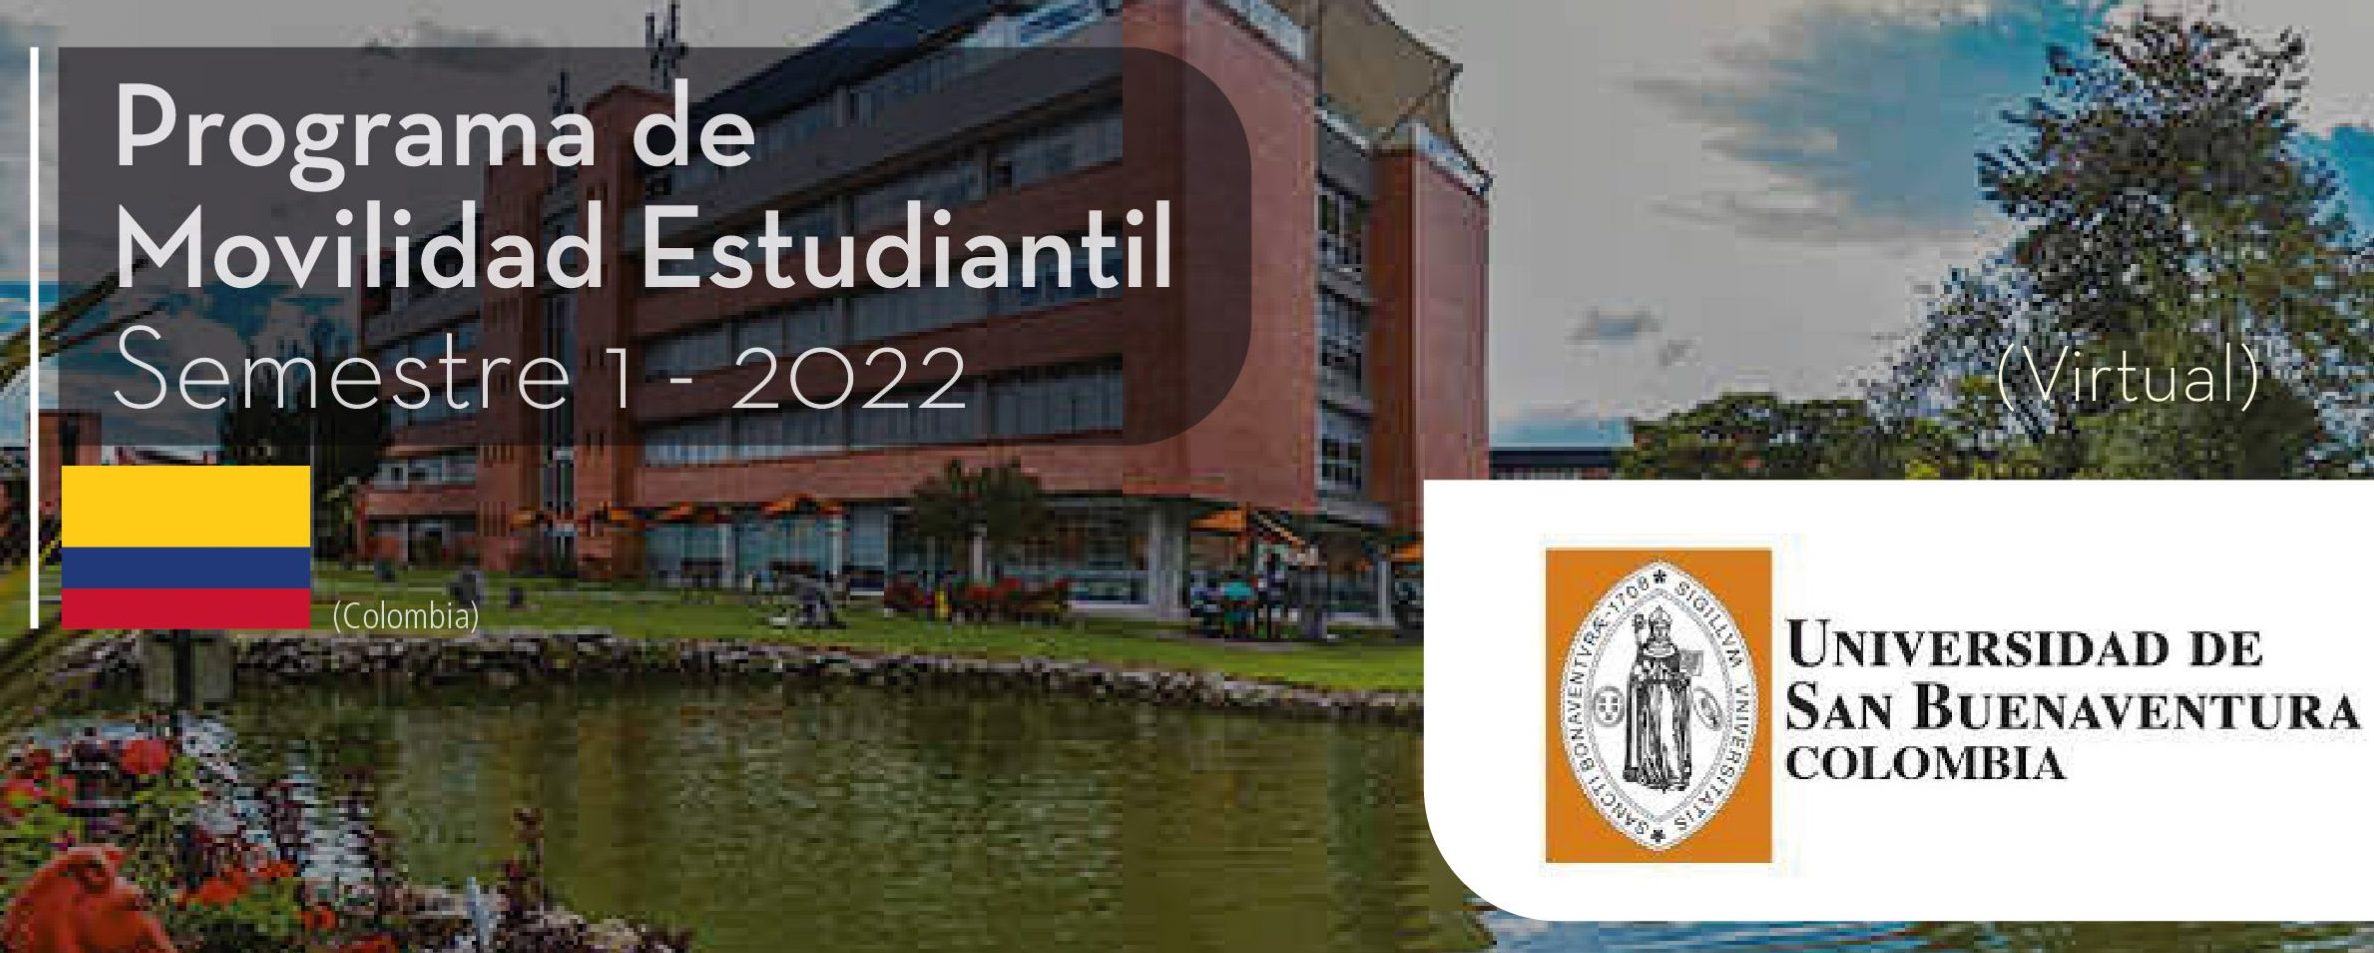 La Universidad de San Buenaventura de Colombia es parte del Programa de Movilidad Virtual Estudiantil UCB por el Mundo.